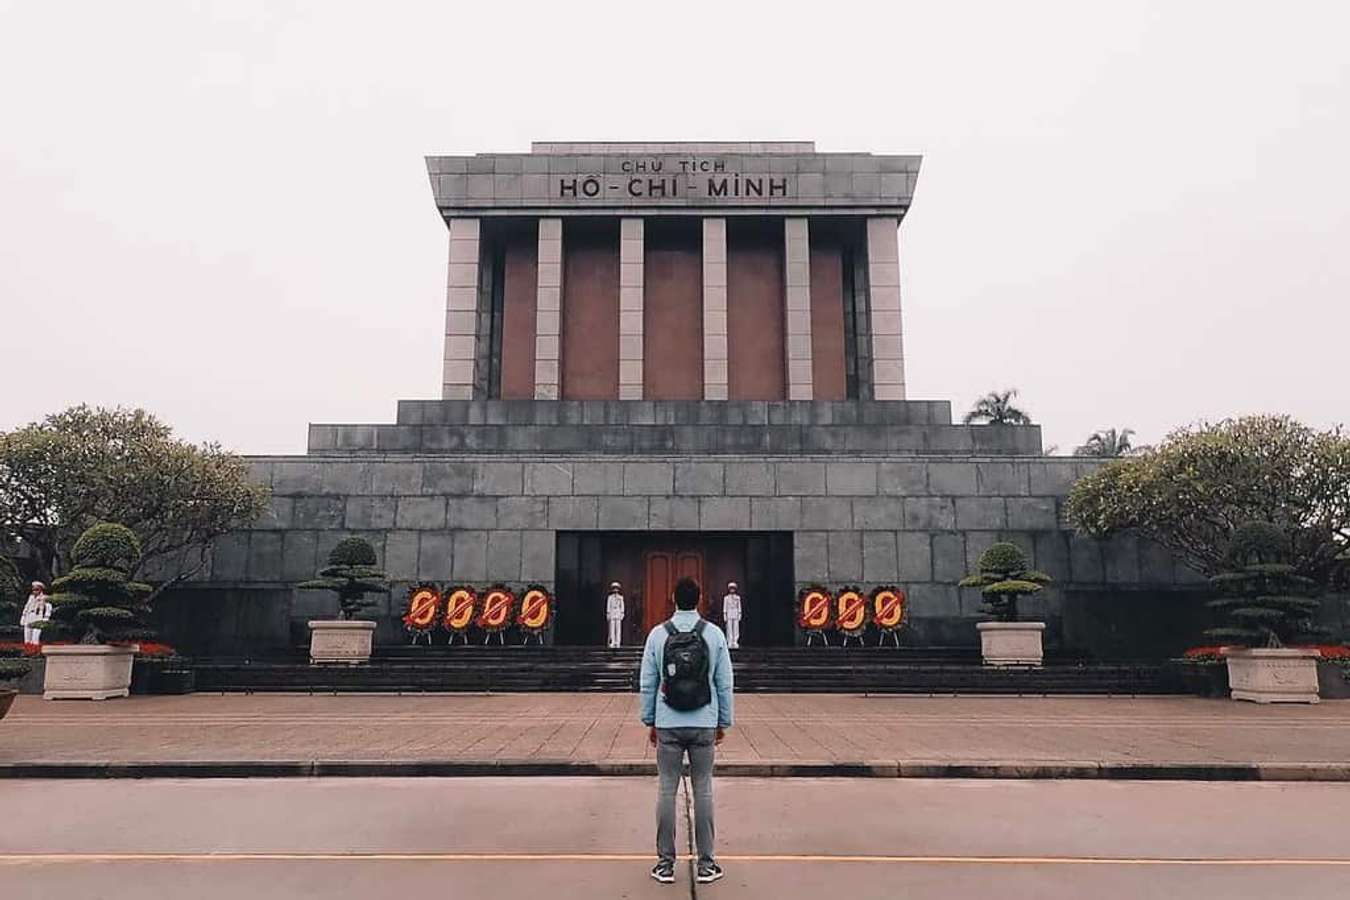 Du lịch Hà Nội Lăng Hồ Chí Minh
